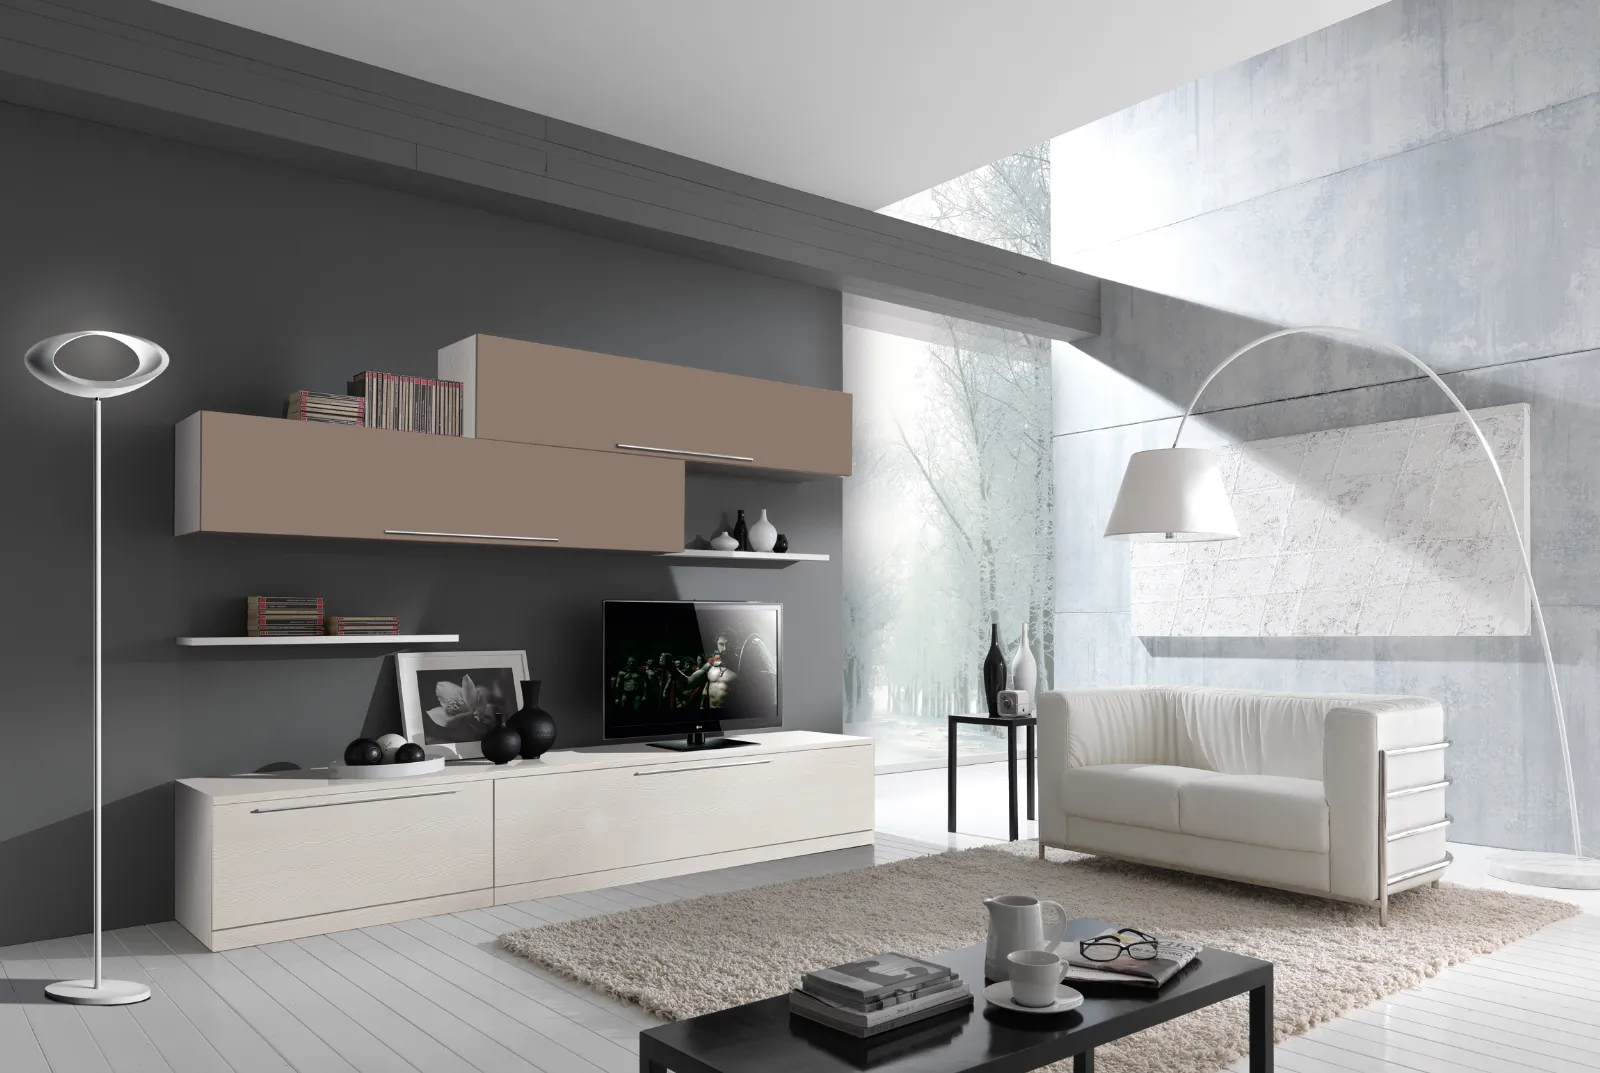 Come arredare soggiorno moderno for Soggiorno arredamento moderno